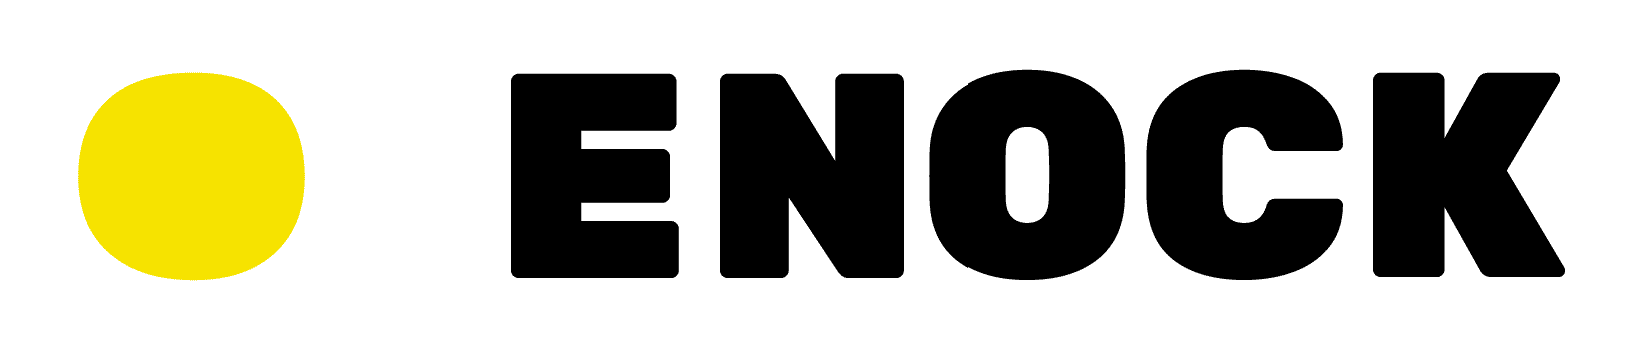 logo Enock